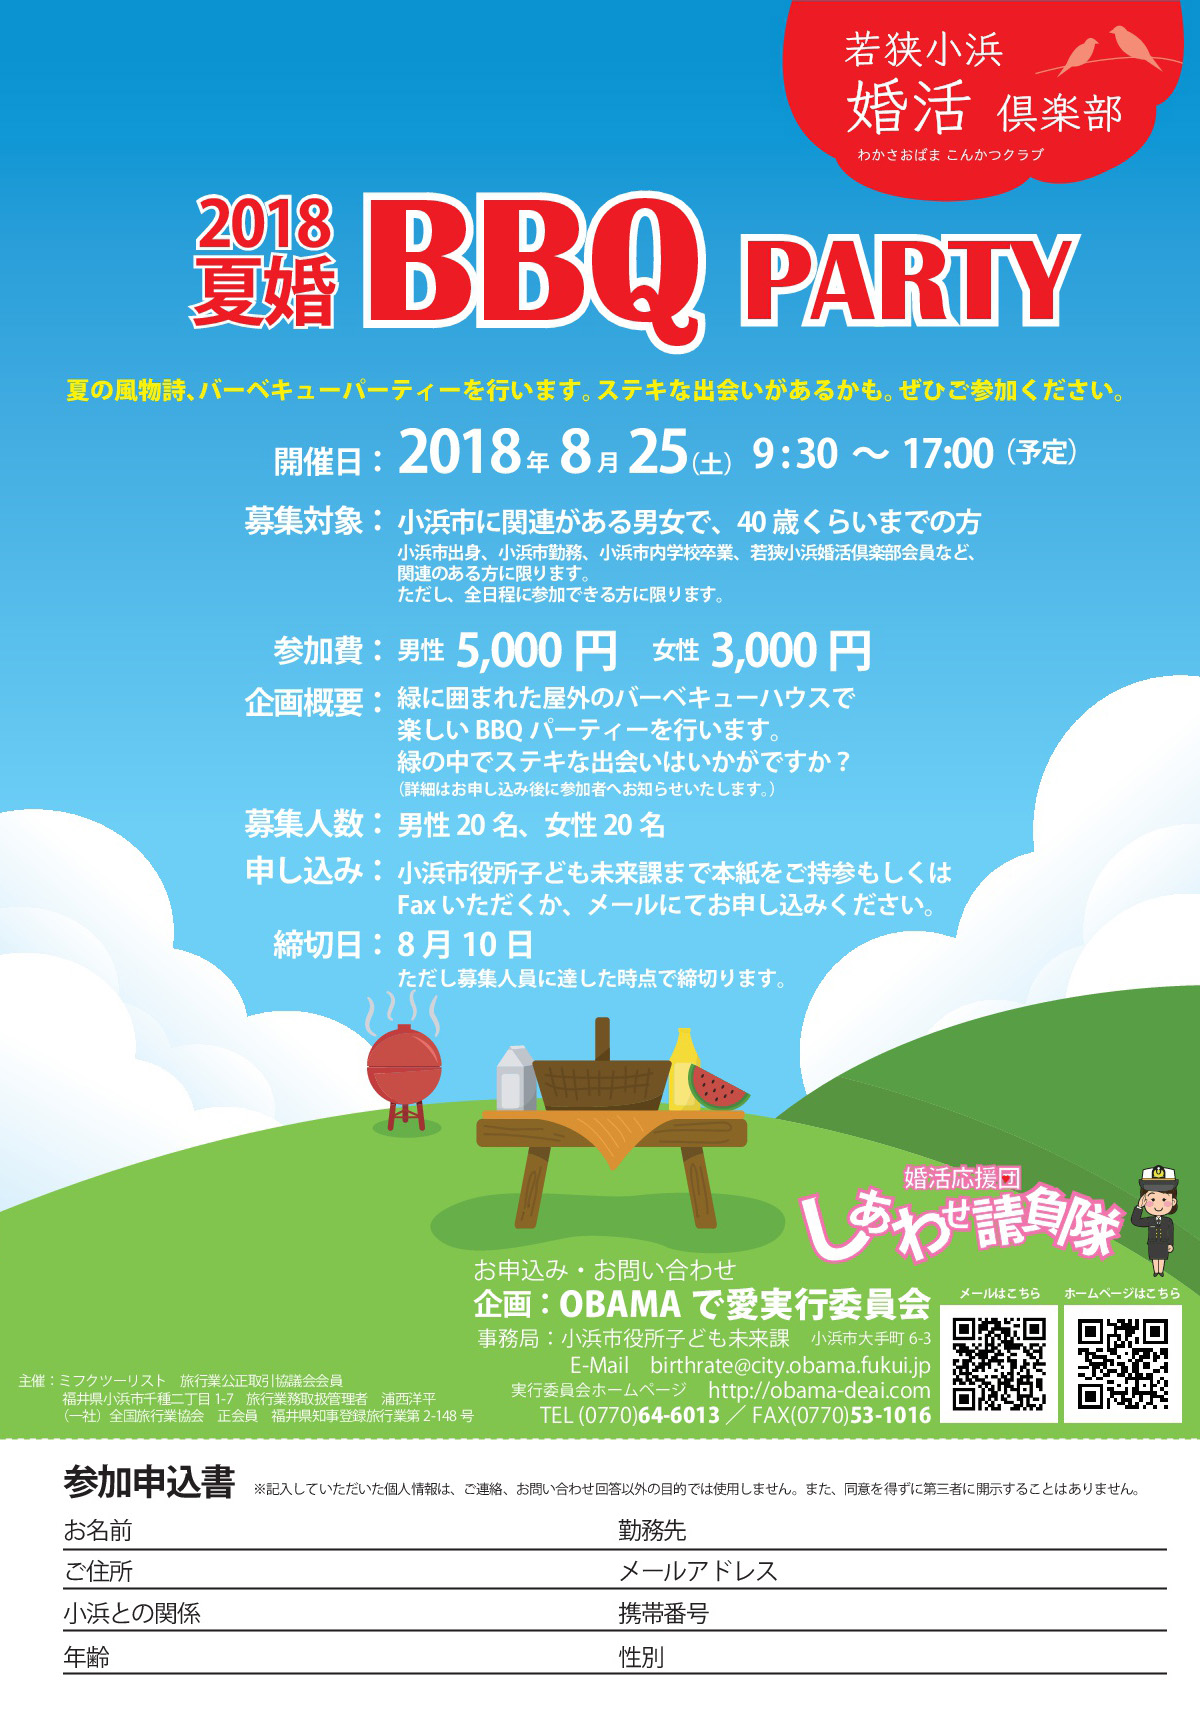 8/25「2018夏婚BBQ PARTY」参加者大募集！！ | OBAMAで愛実行委員会